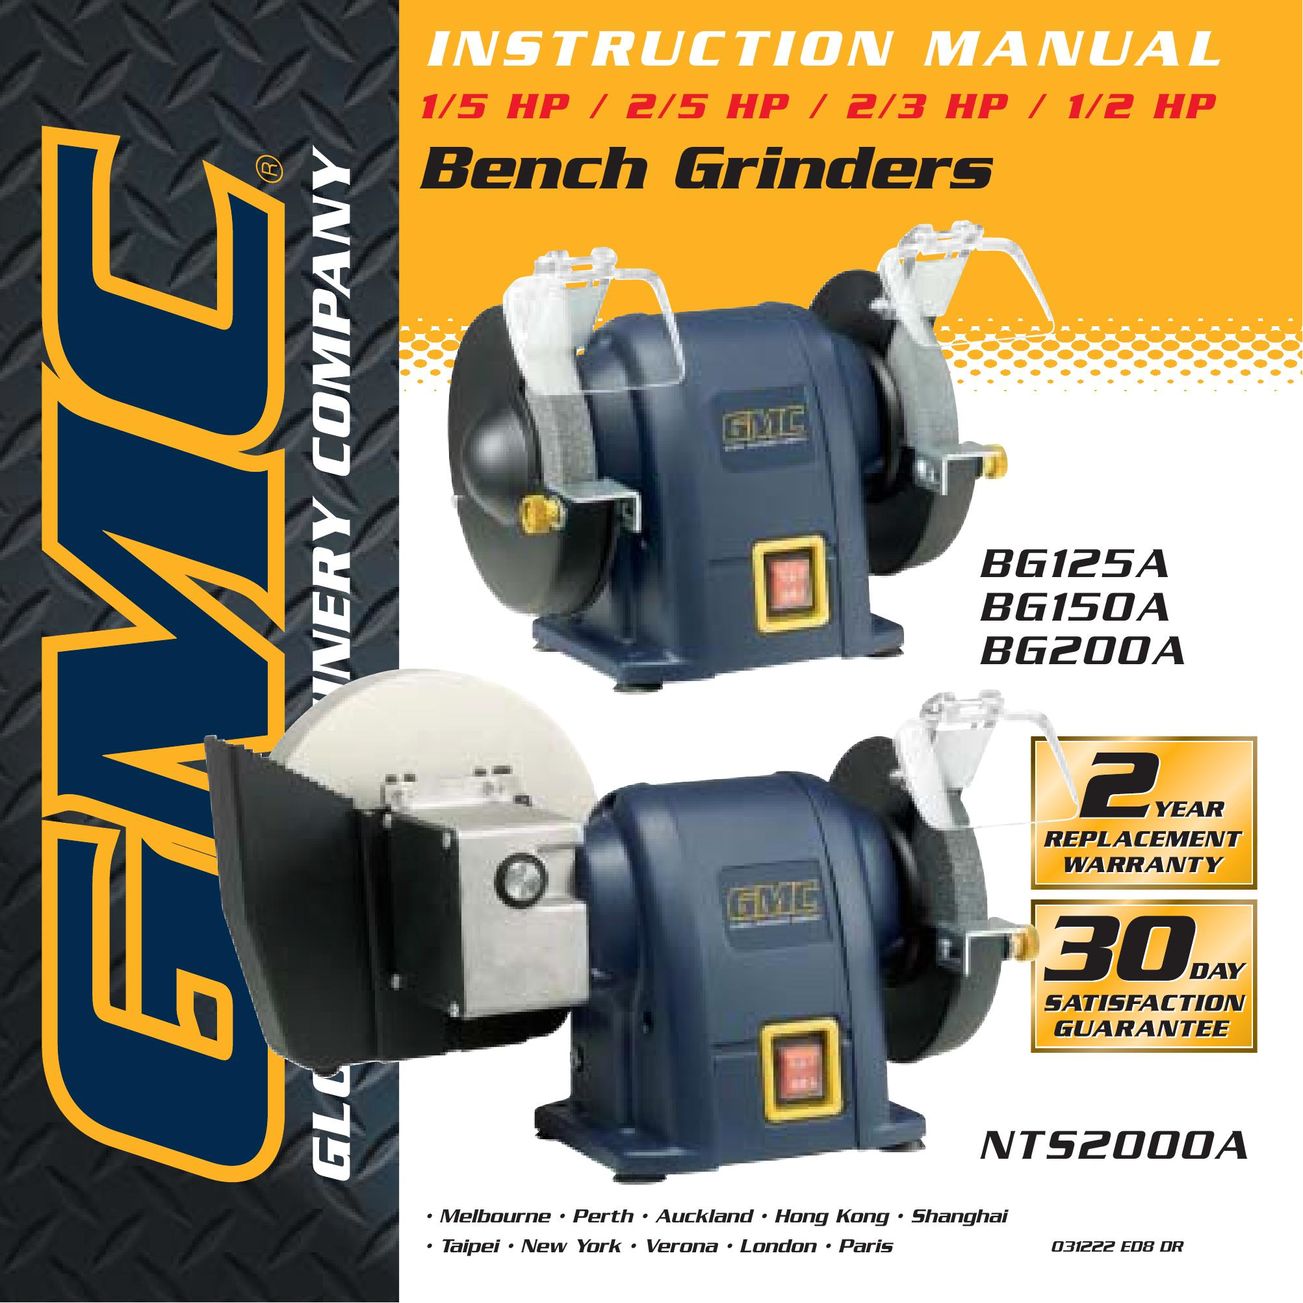 Global Machinery Company BG150A Grinder User Manual